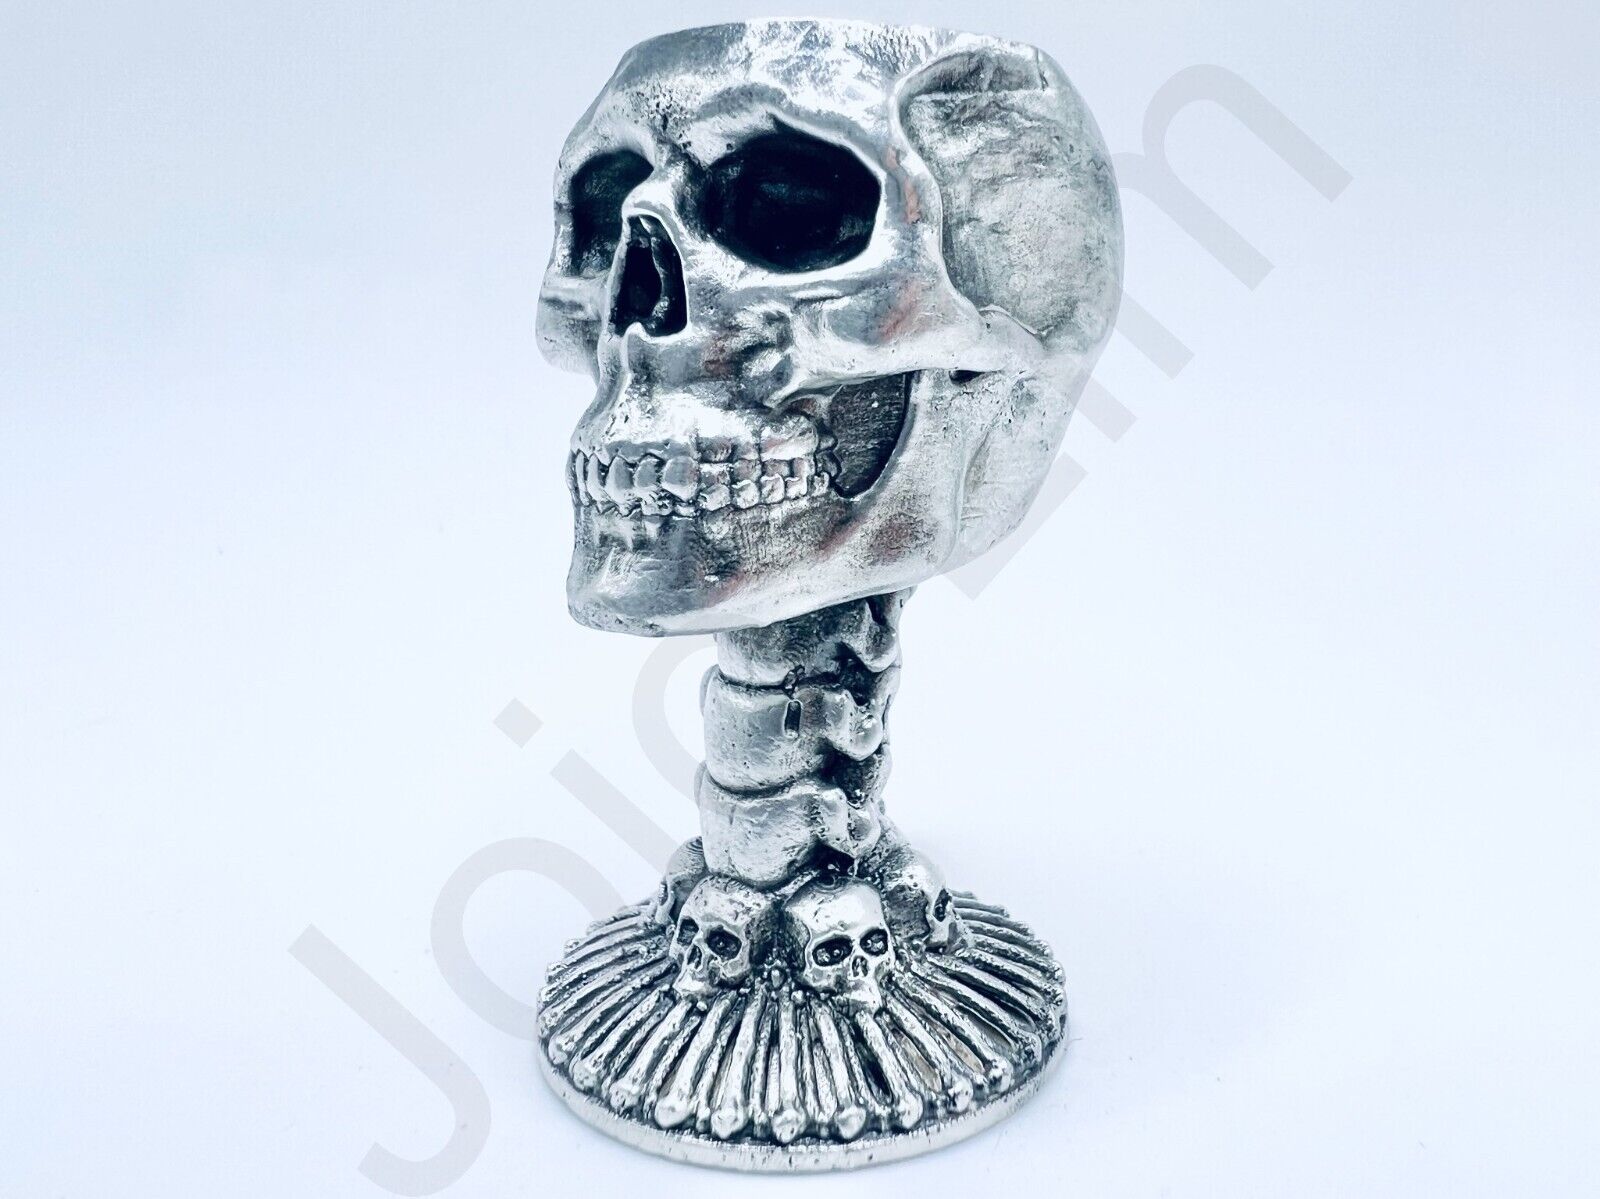 2.9 oz Hand Poured 999 Silver Bar Minatare Skull Cup/Chalice Bullion Cast Statue